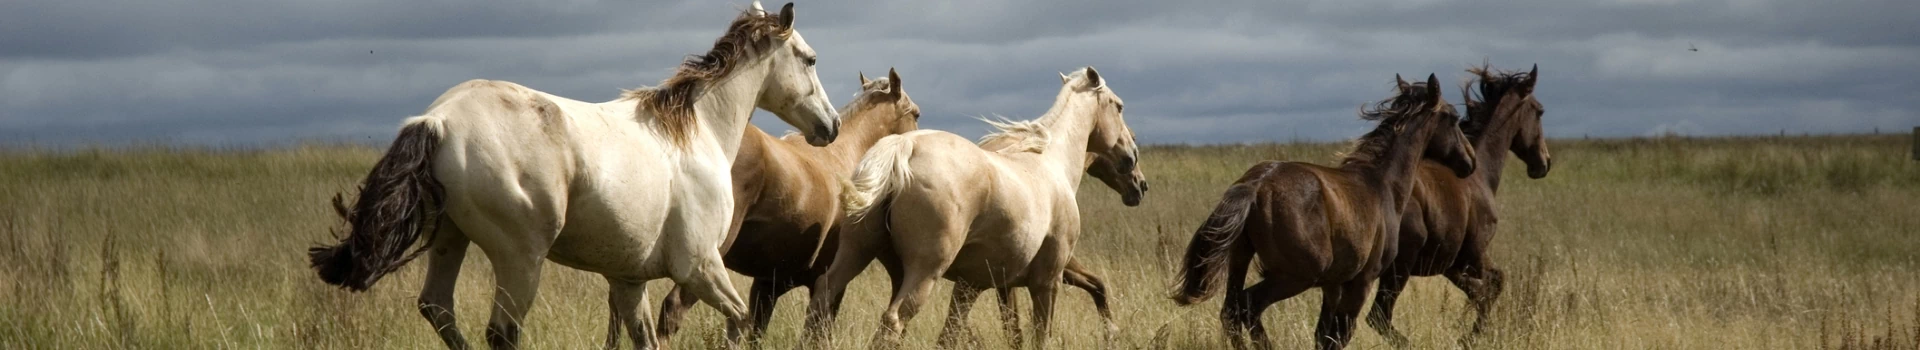 białe i brązowe konie